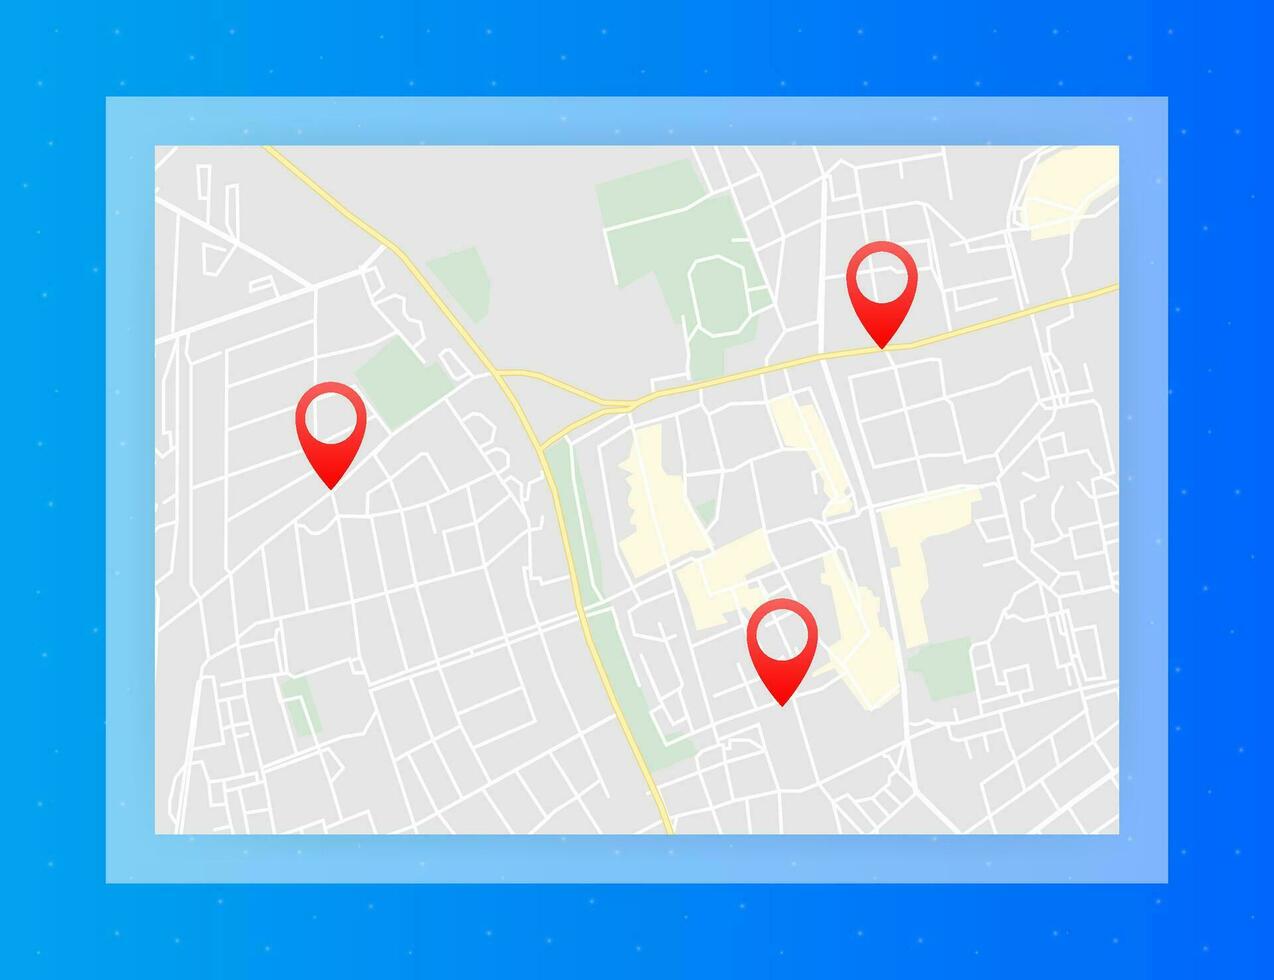 stad kaart met pinnen. GPS navigatie route met aanwijzingen. stad- wegen en woon- blokken. vector